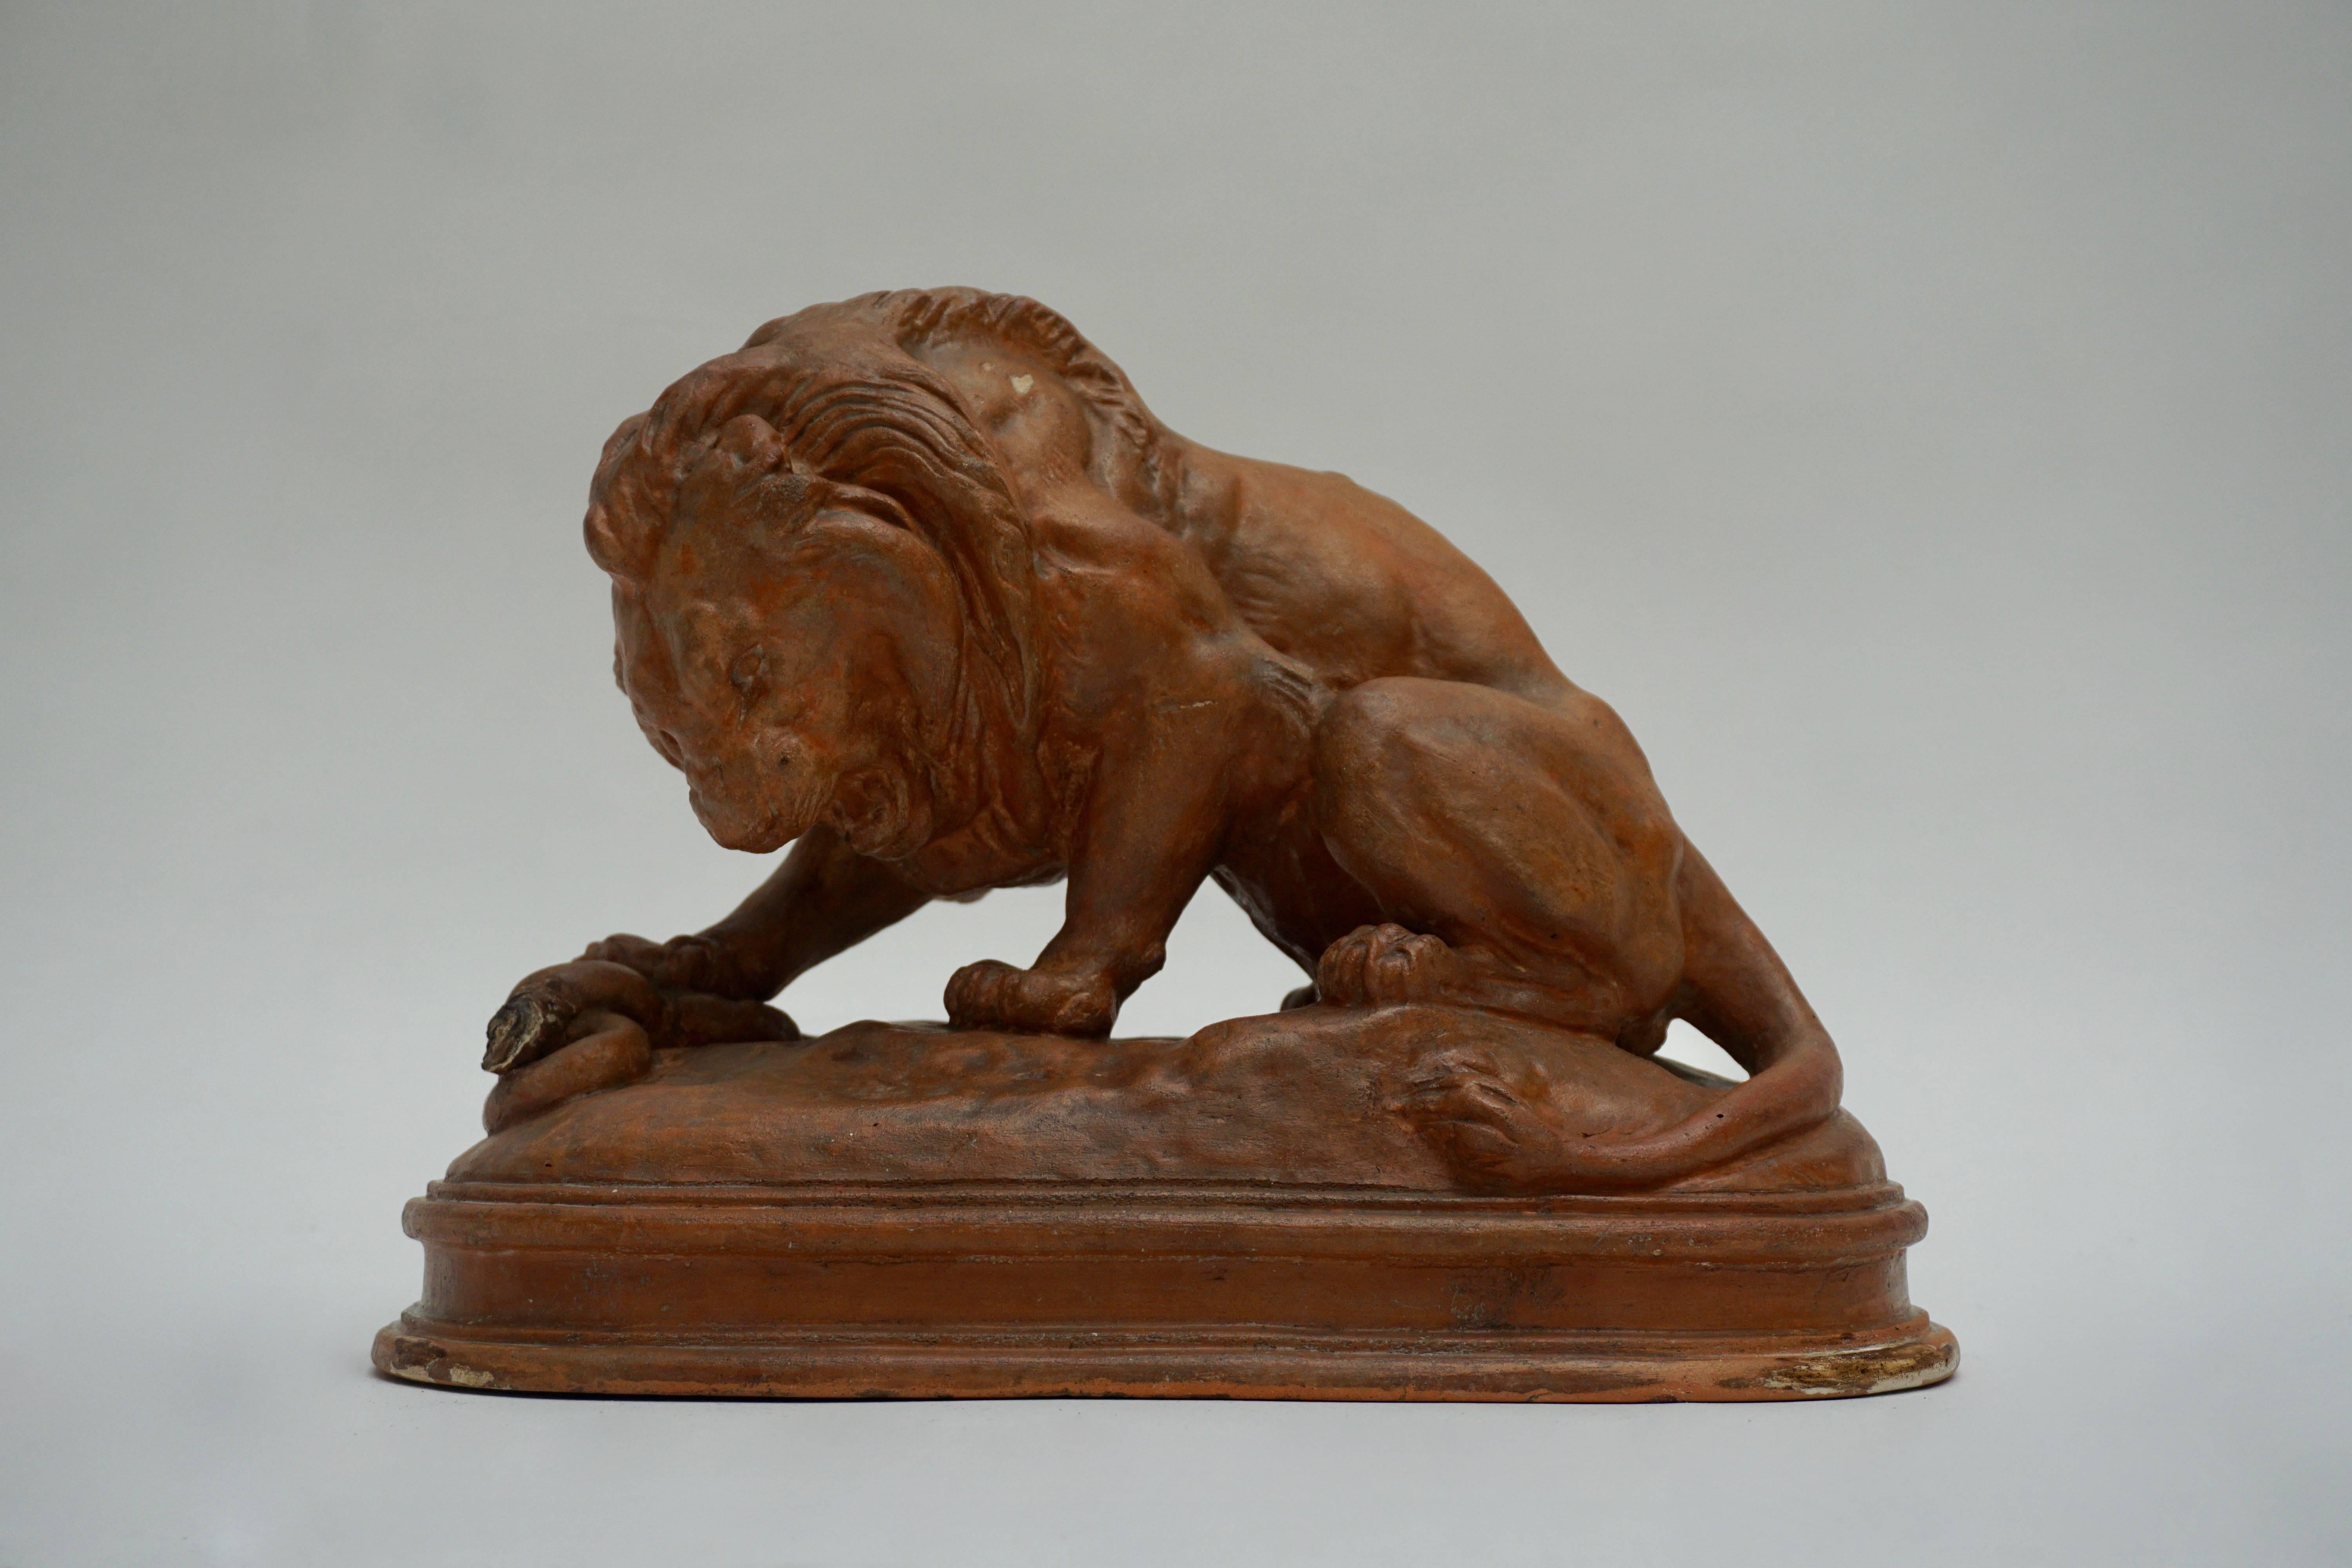 Skulptur eines Terrakotta-Löwen.
Maße: Breite 34 cm.
Höhe 25 cm.